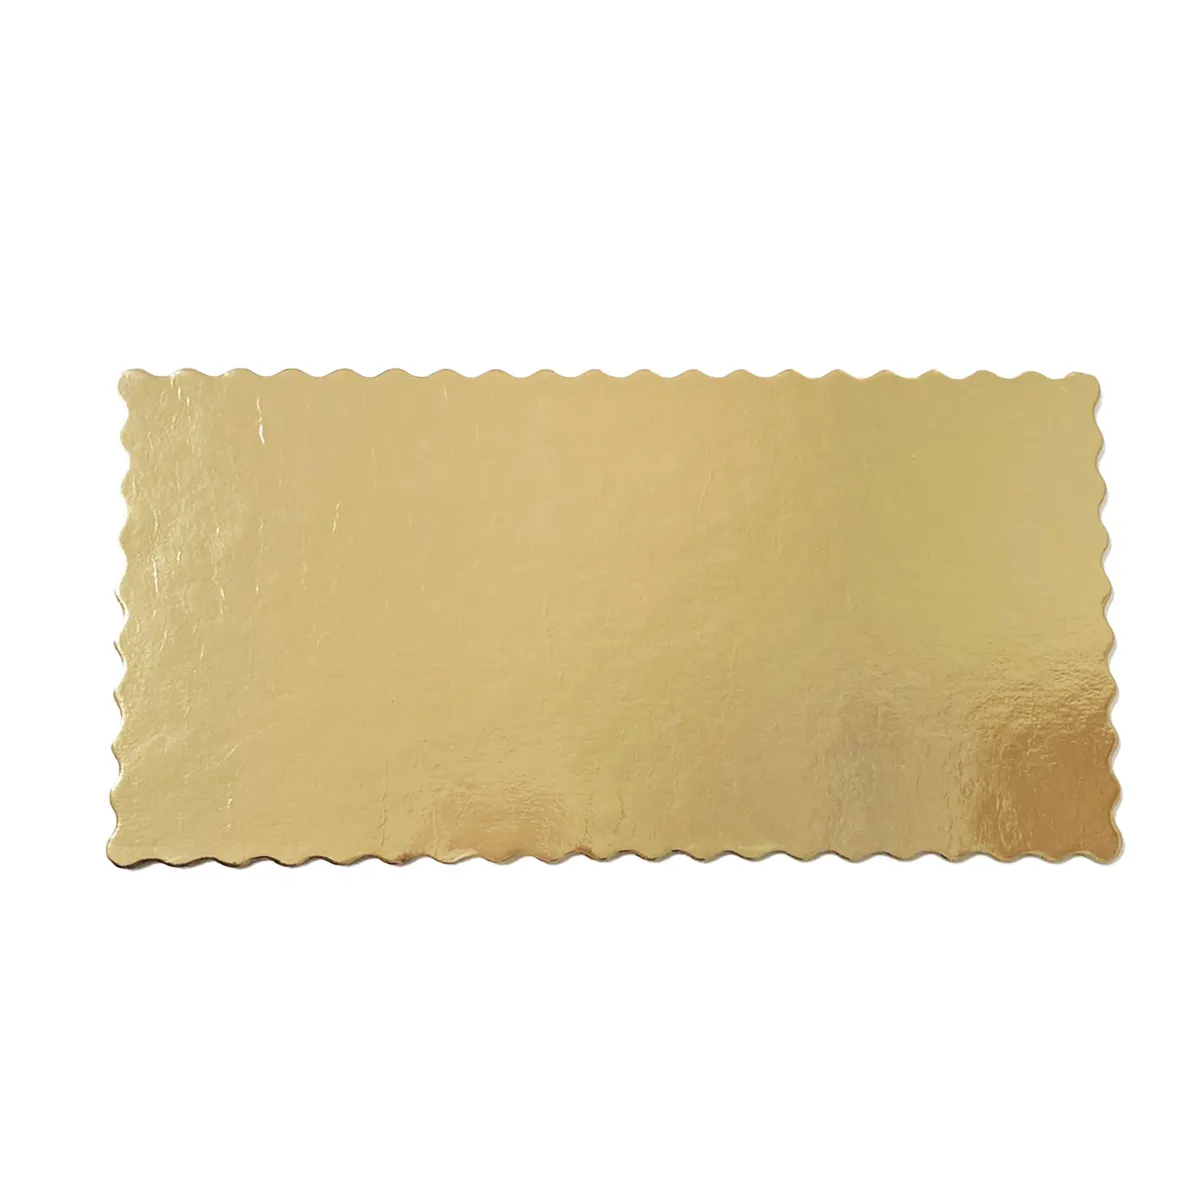 ألواح كيك فريدة من نوعها باللون الذهبي والأسود - من ورق مقوى معاد تدويره بتصميم متناقض 15×30 سم - لعرض الكيك بشكل درامي